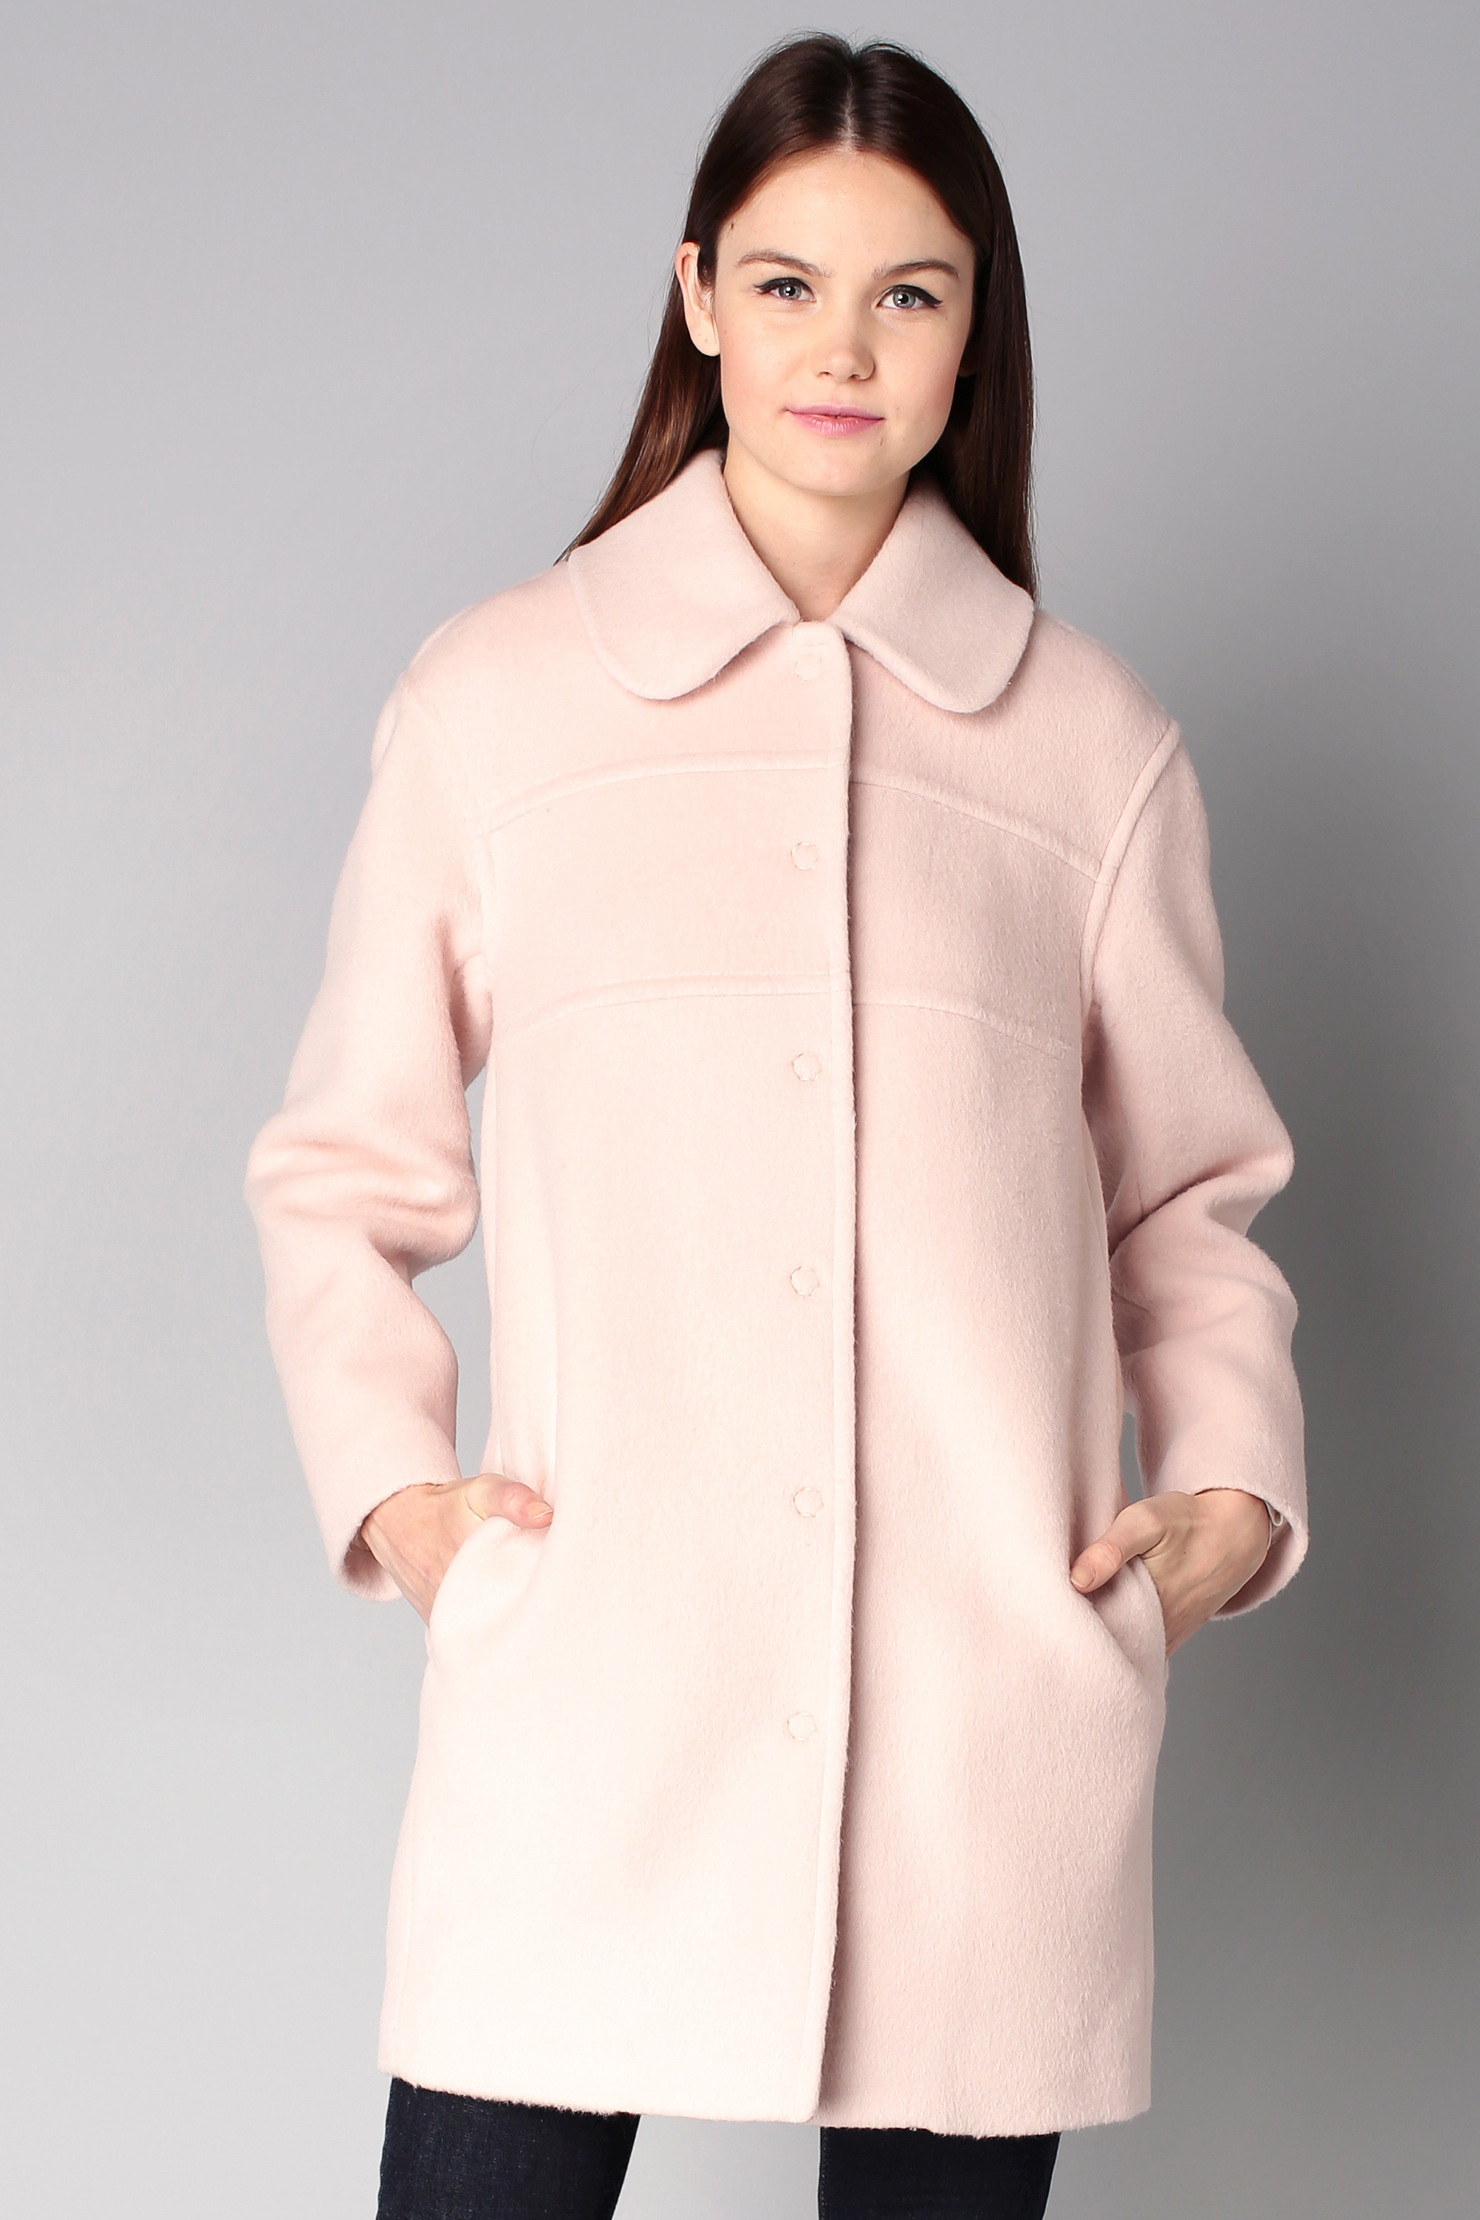 Серо розовое пальто. Пальто розовое с широкими рукавами. Серо-розовое пальто Anna verdi. Я люблю пальто.